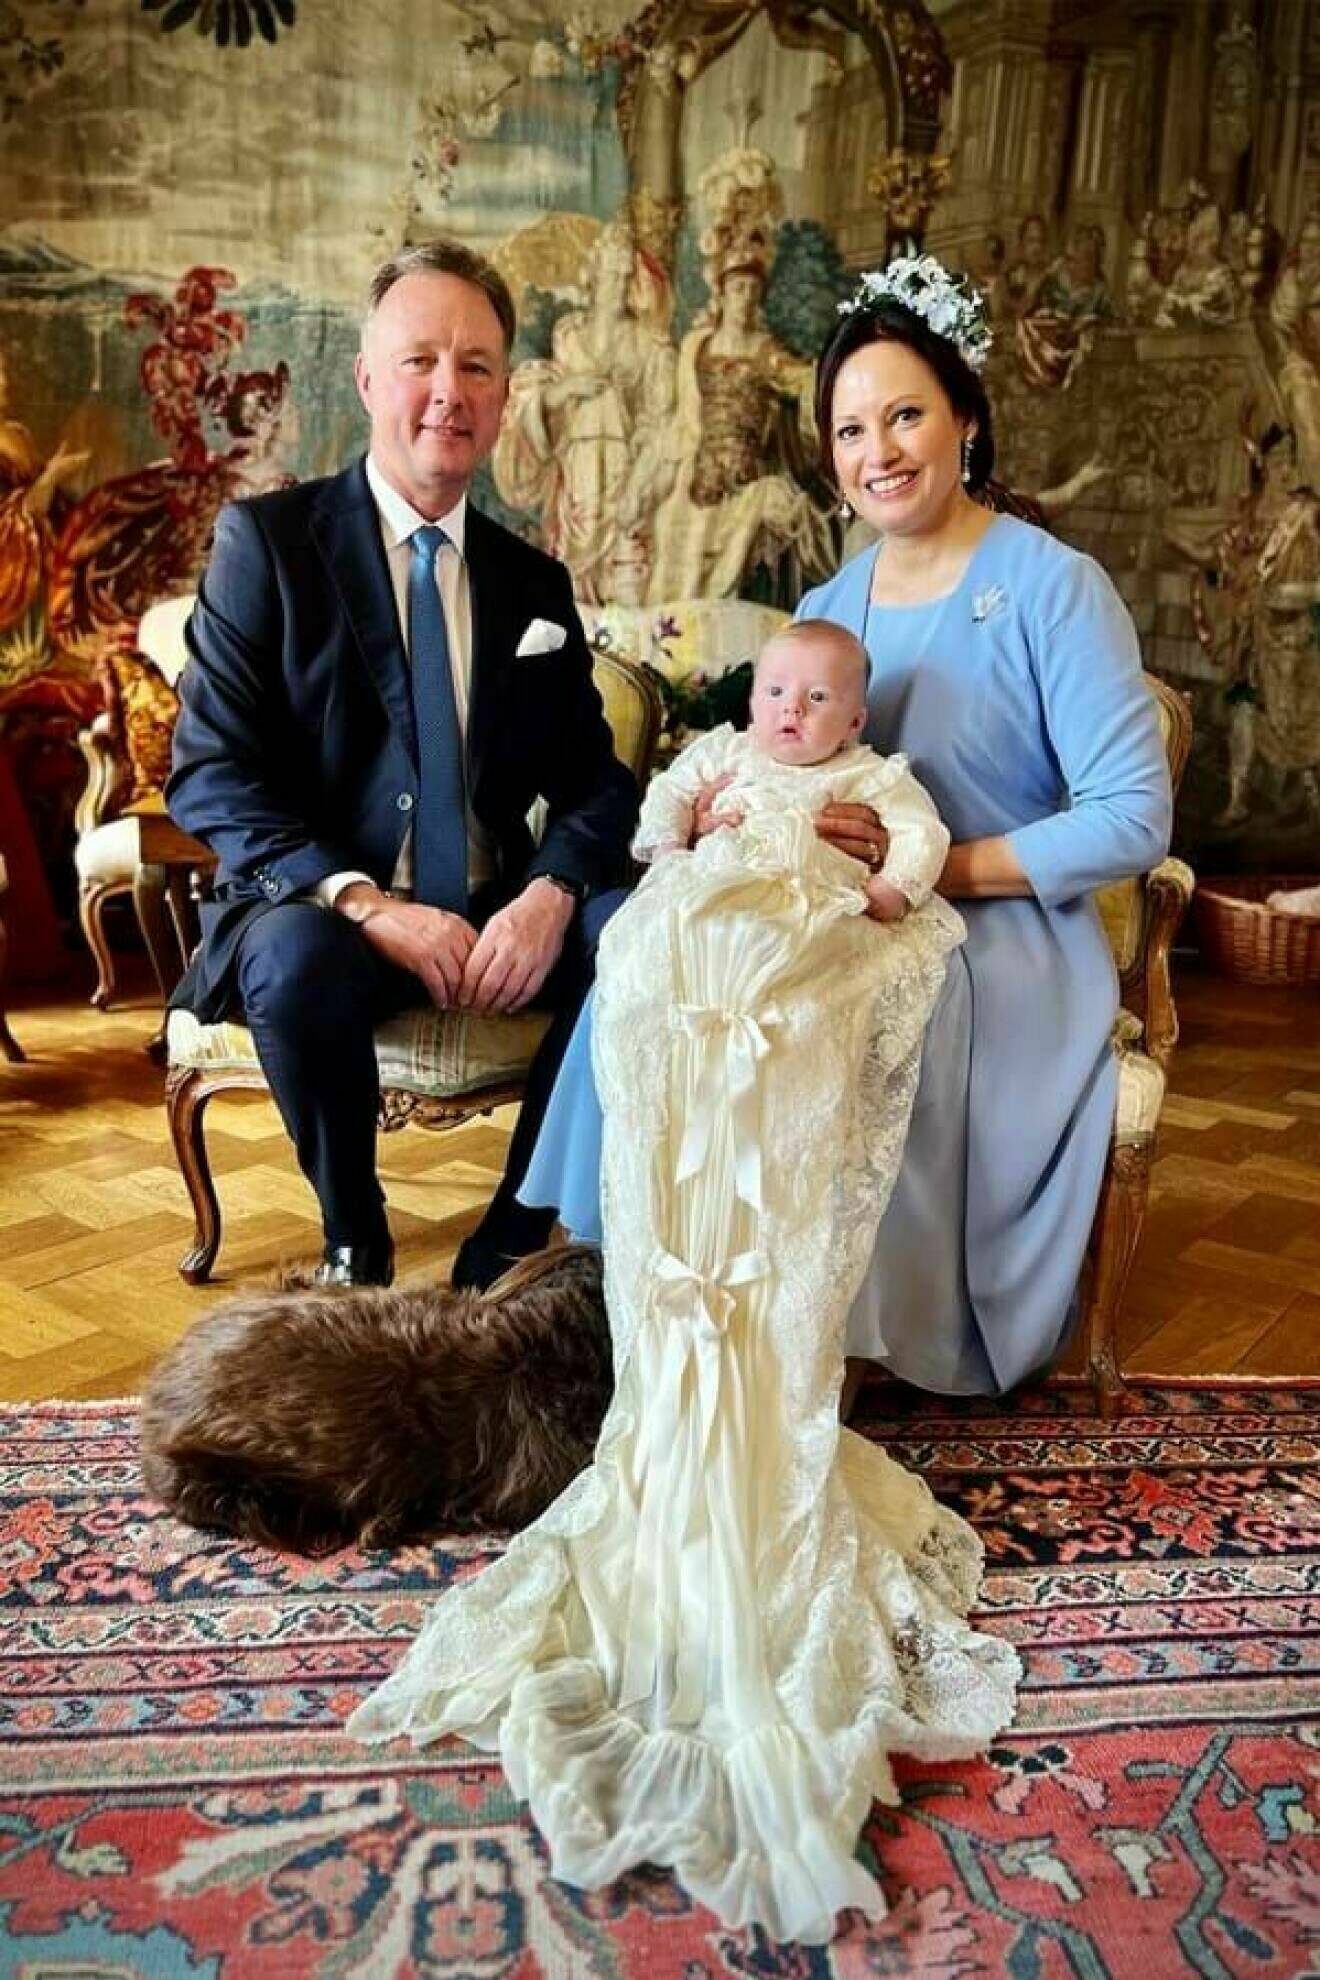 Prins Gustav och prinsessan Carina med sin nydöpta son i famnen